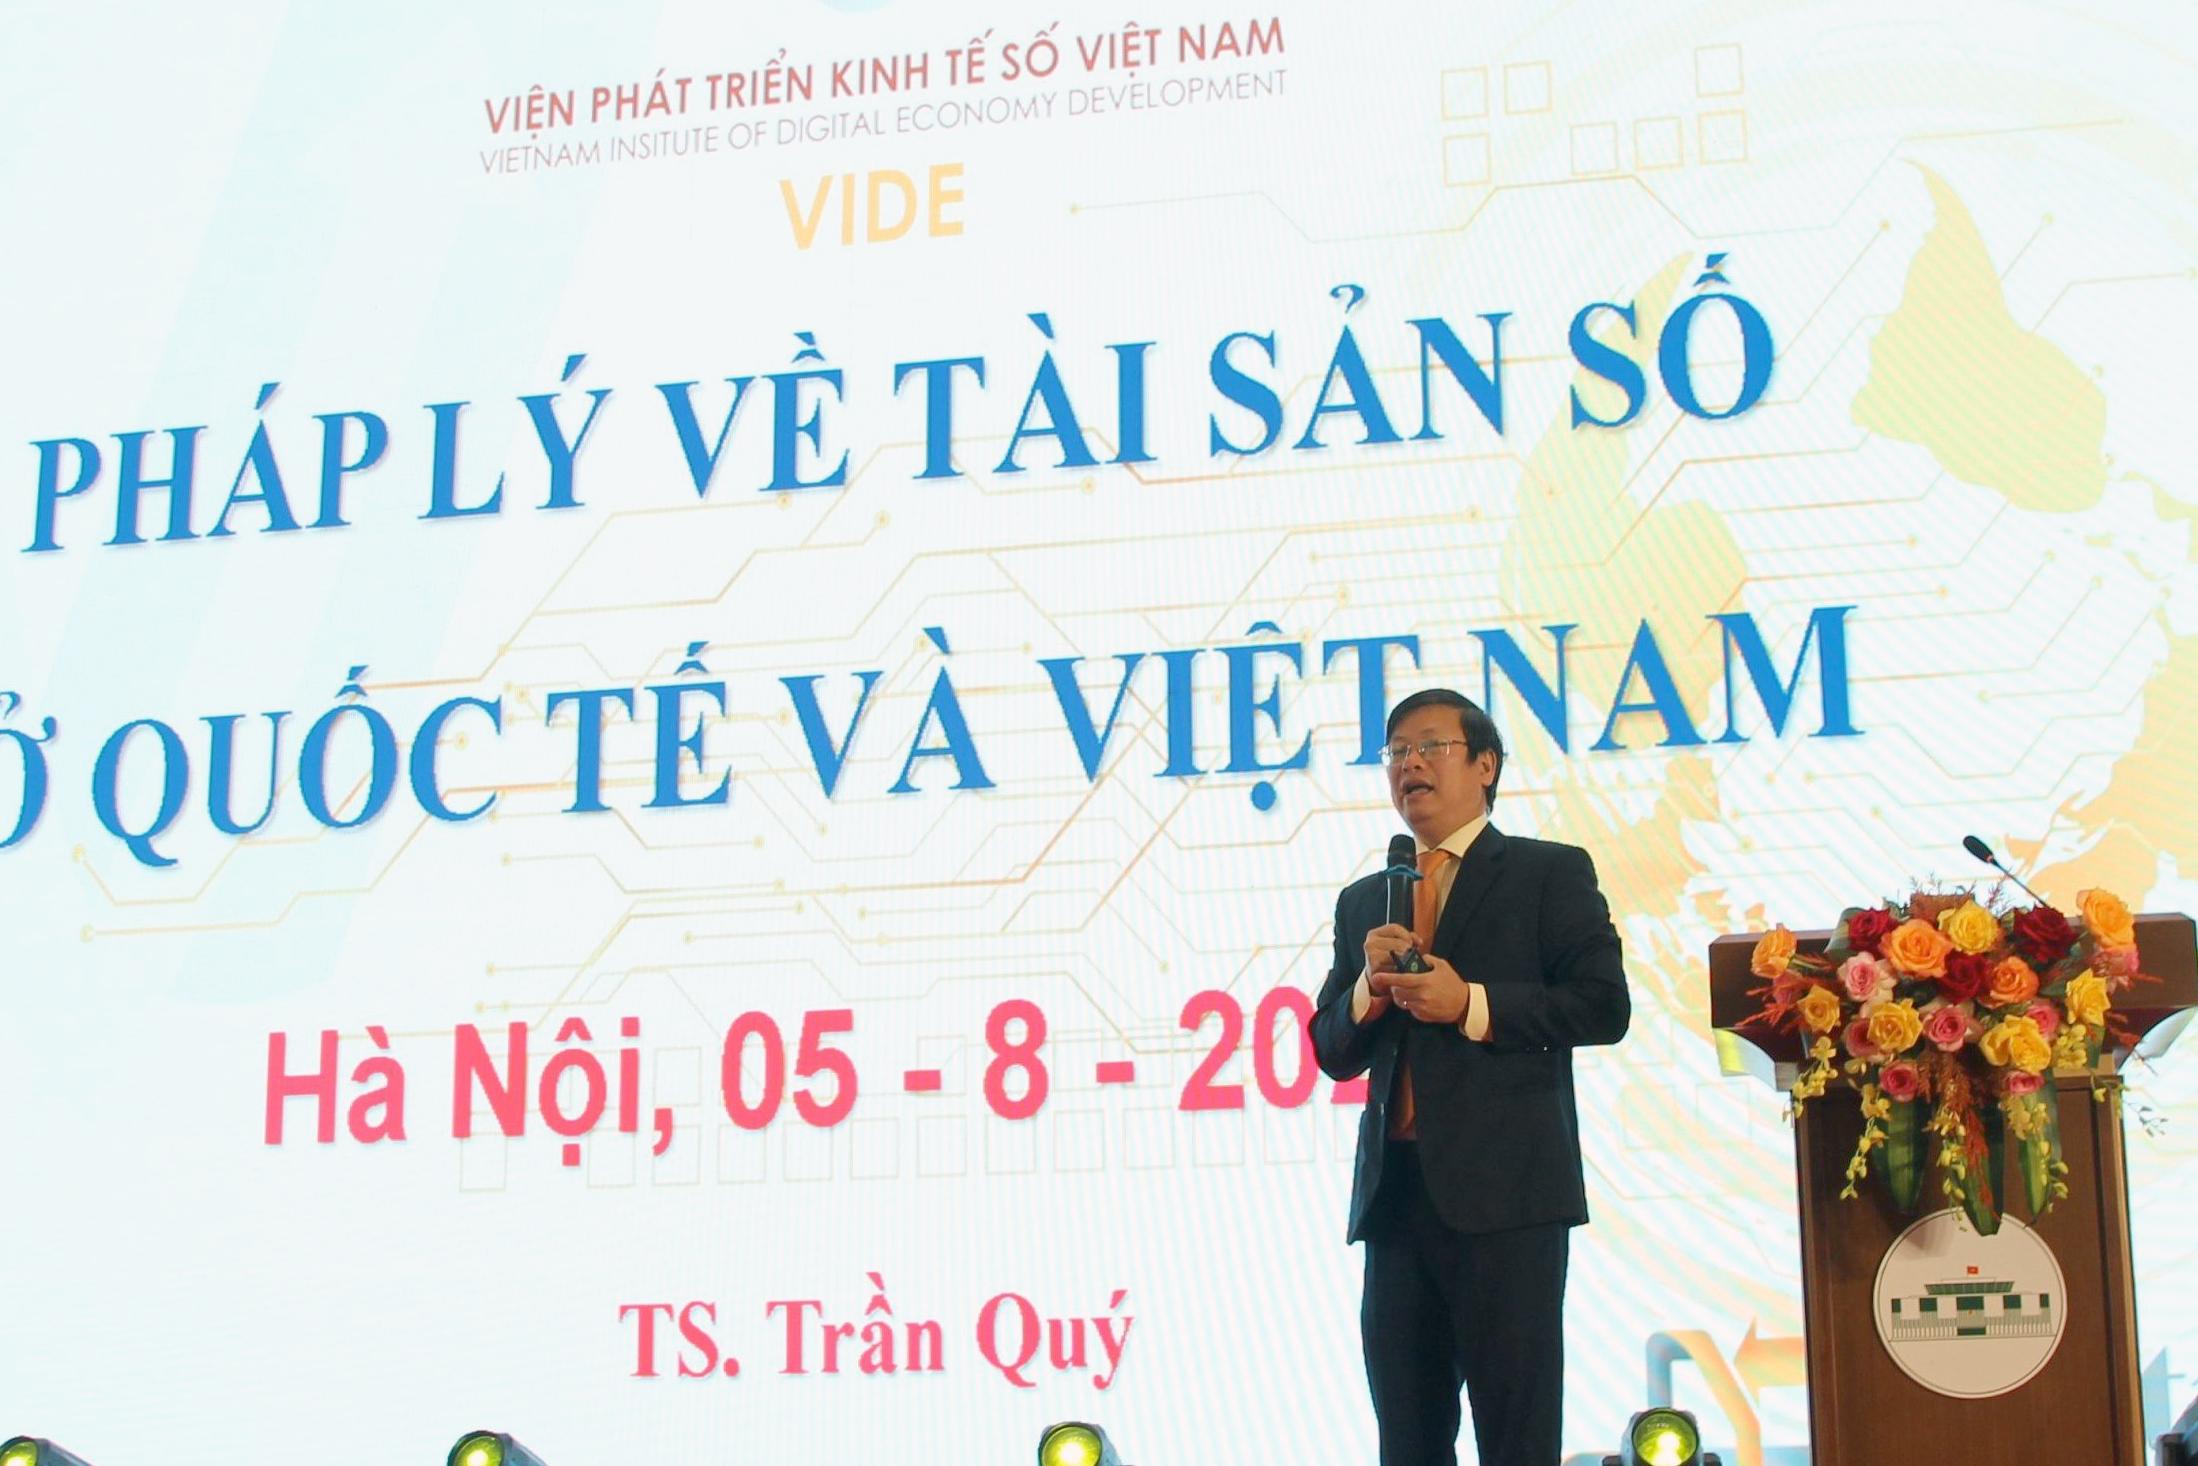 Tiến sĩ Trần Quý, Viện trưởng Viện phát triển kinh tế số Việt Nam, trình bày tham luận với đề tài “Pháp lý về tài sản số ở quốc tế và Việt Nam”.